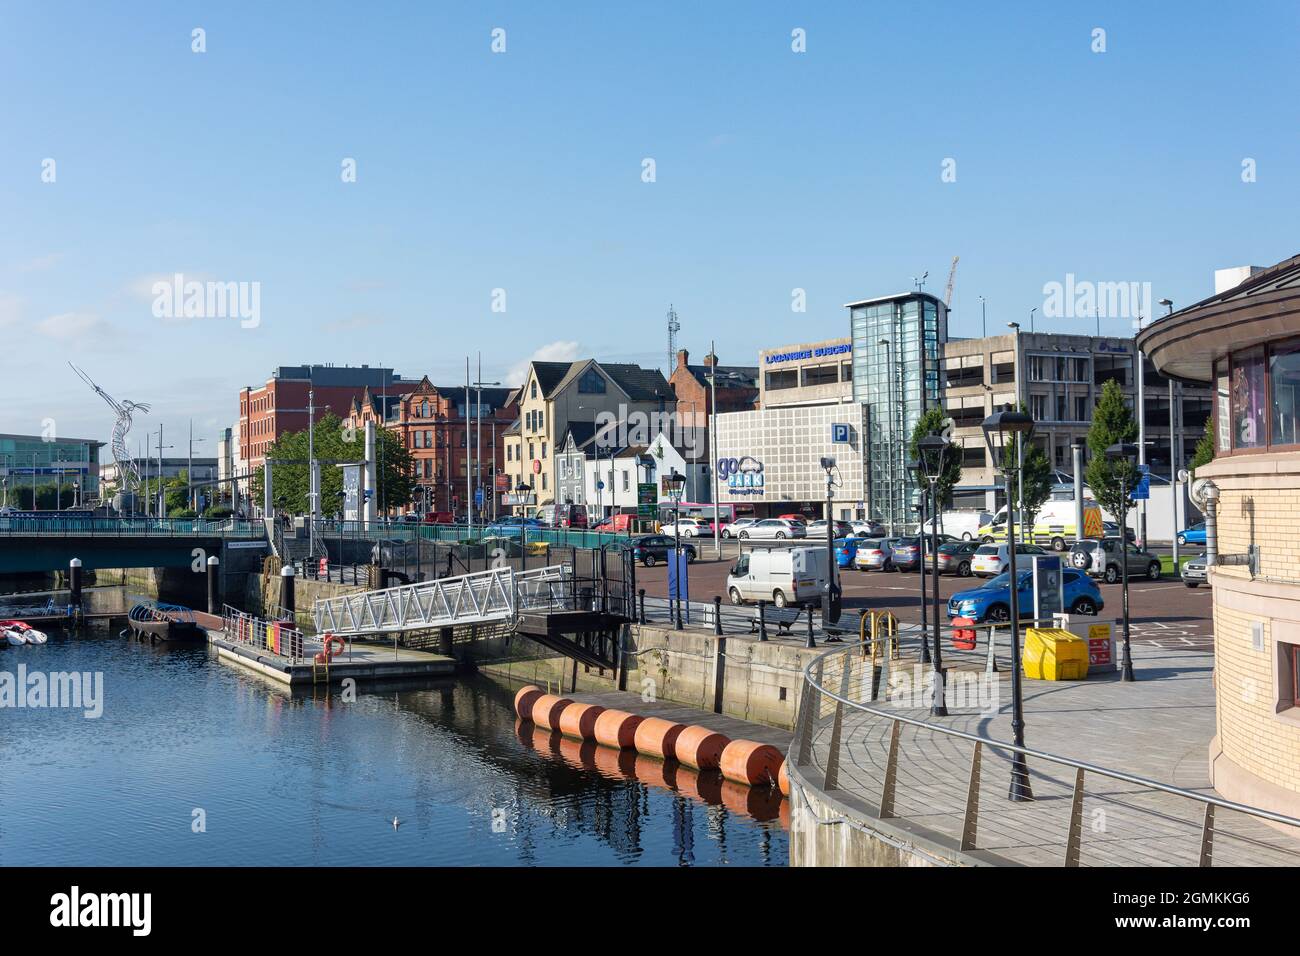 Loganside attraverso il fiume Lagan, Donegall Quay, città di Belfast, Irlanda del Nord, Regno Unito Foto Stock